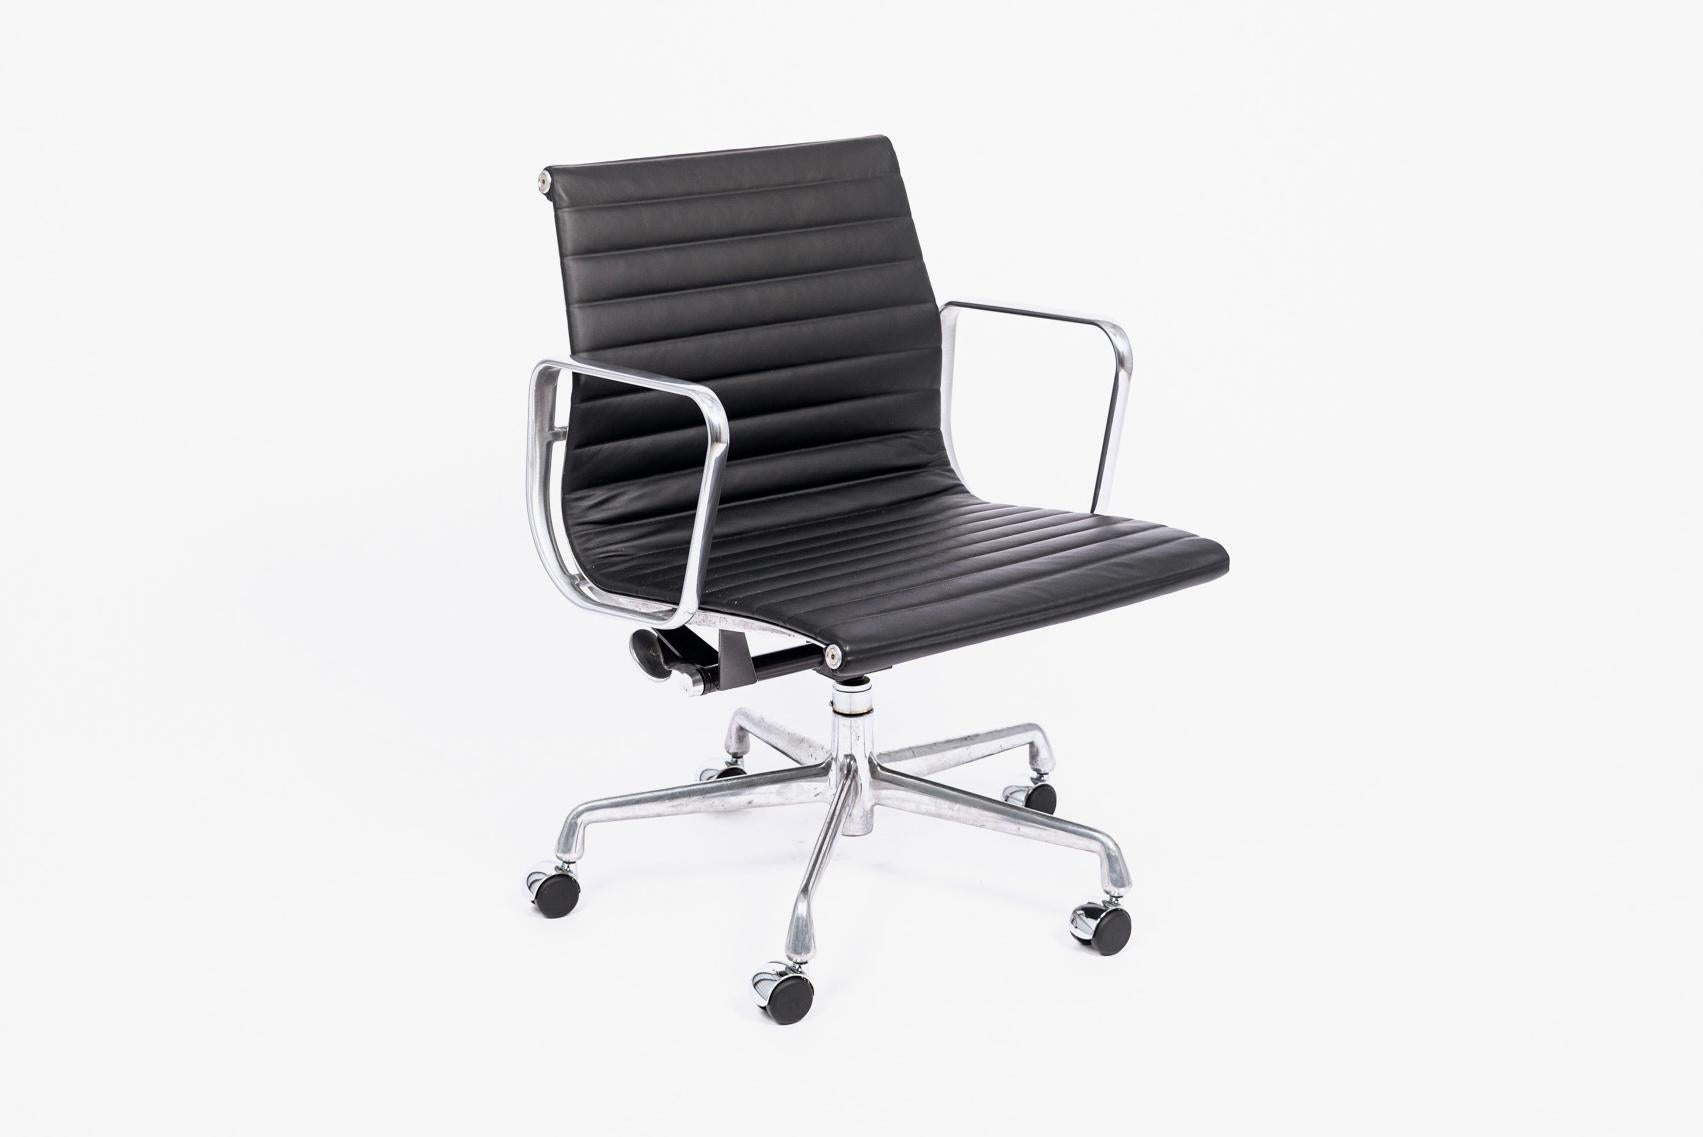 Le fauteuil de bureau Aluminum Group Management, conçu par Charles & Ray Eames pour Herman Miller, fait partie de la Collection Aluminum Group des Eames. Ces chaises originales sont le fruit de l'expérimentation des Eames avec l'aluminium, qui est